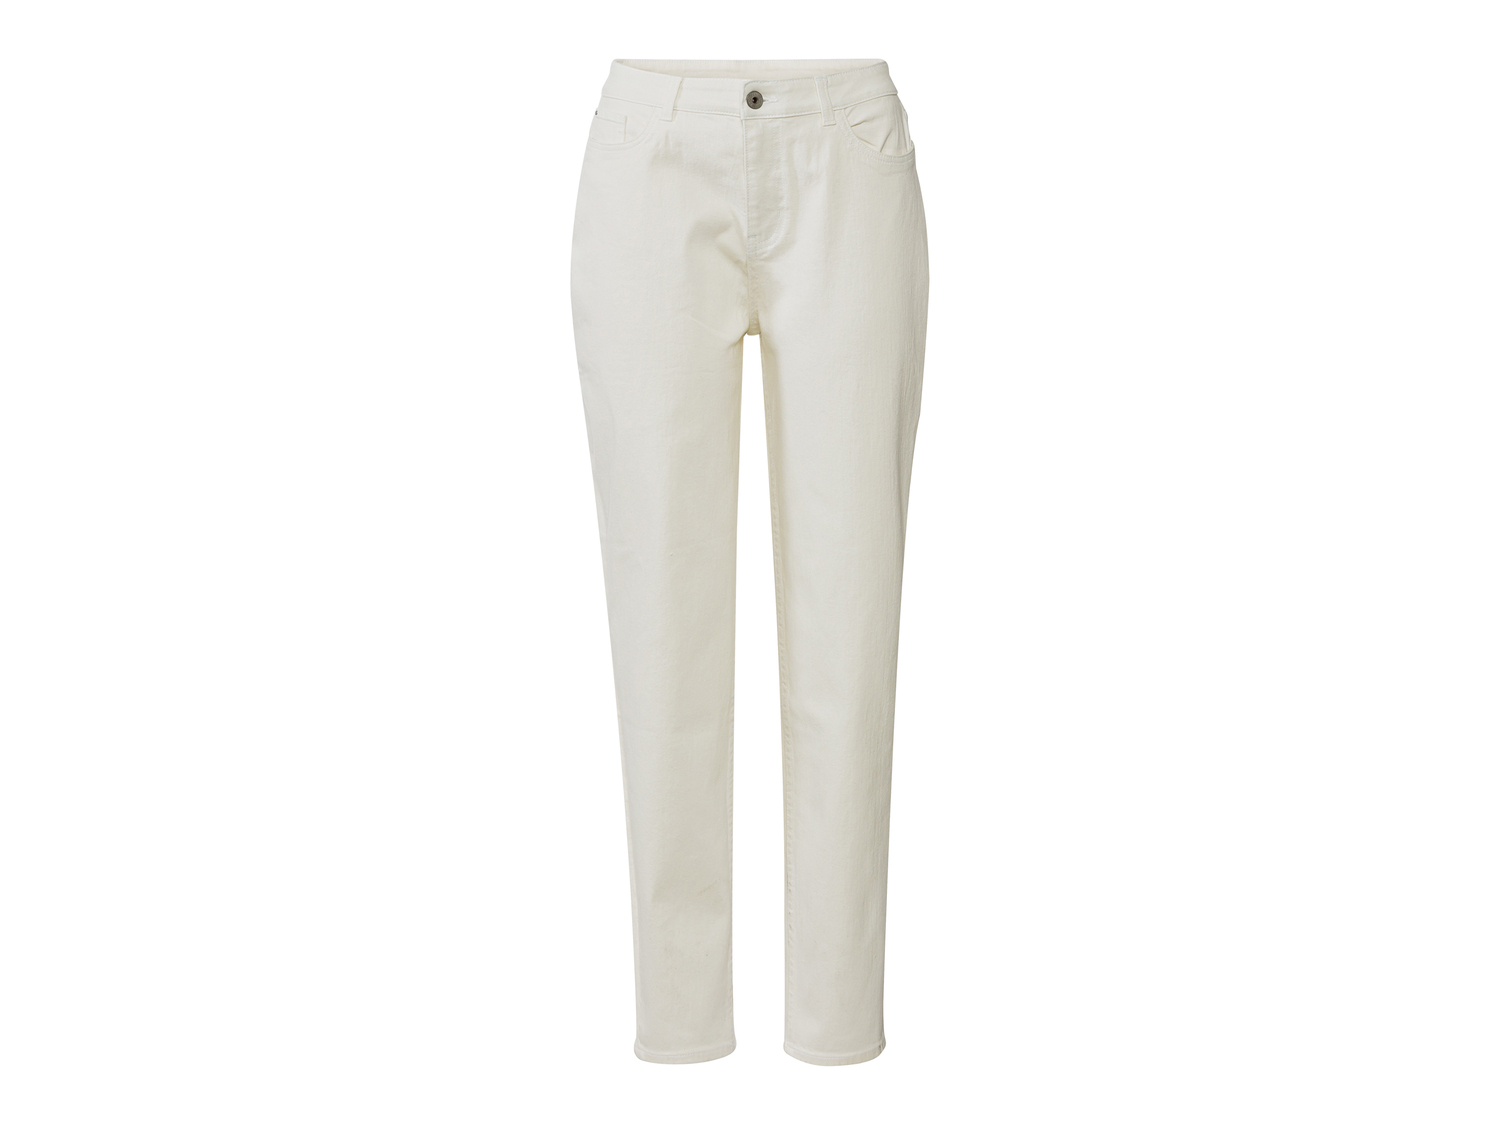 Jeans da donna Esmara, prezzo 14.99 &#8364; 
Misure: 38-48 
- Modello &quot;Mom ...